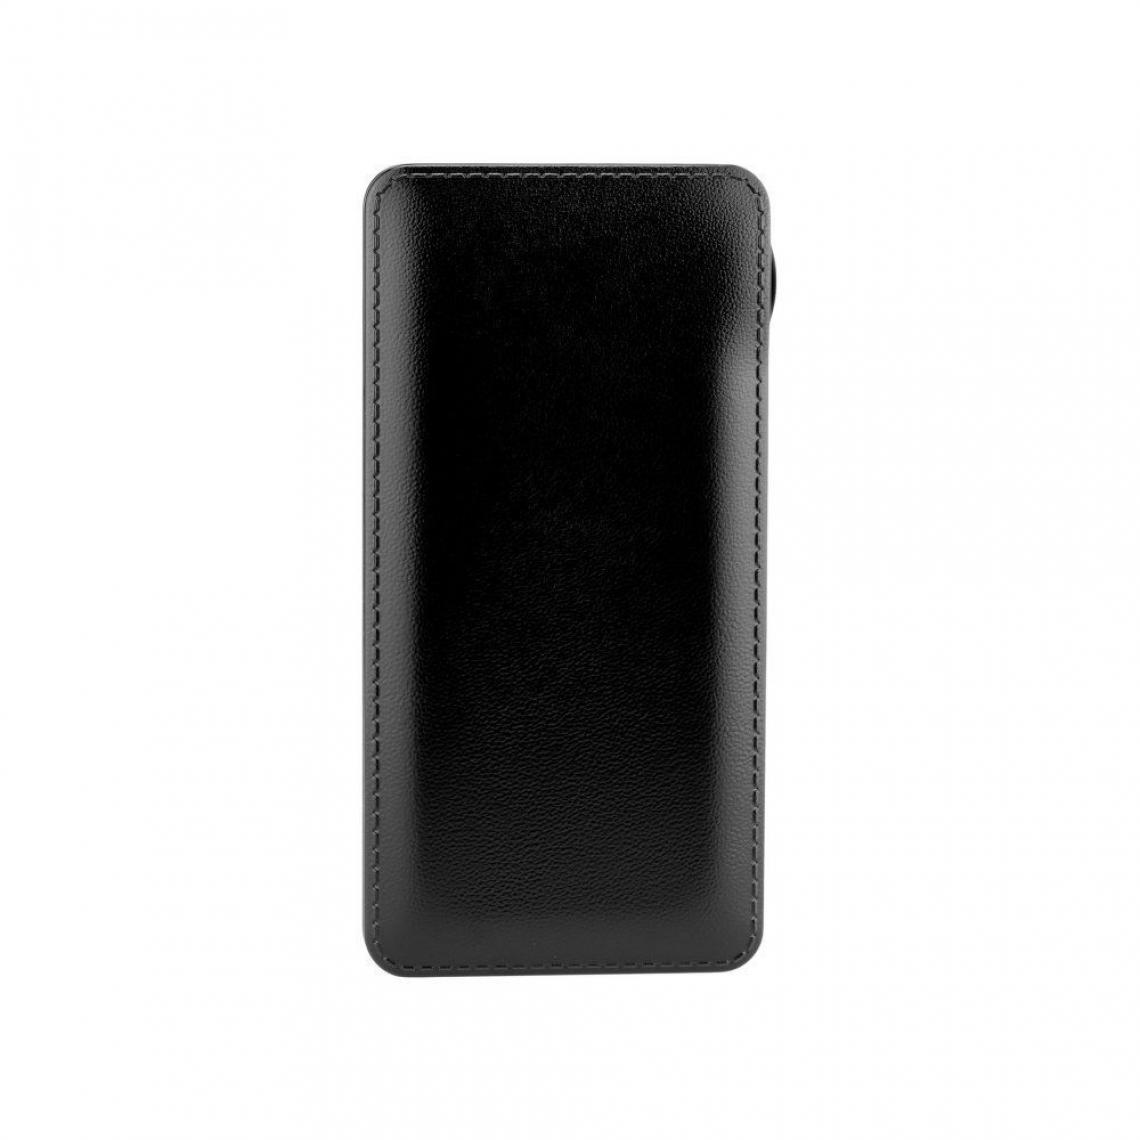 Ozzzo - Chargeur batterie externe 20000 mAh powerbank ozzzo noir pour Asus ZenPad 10 Z300CNL - Autres accessoires smartphone